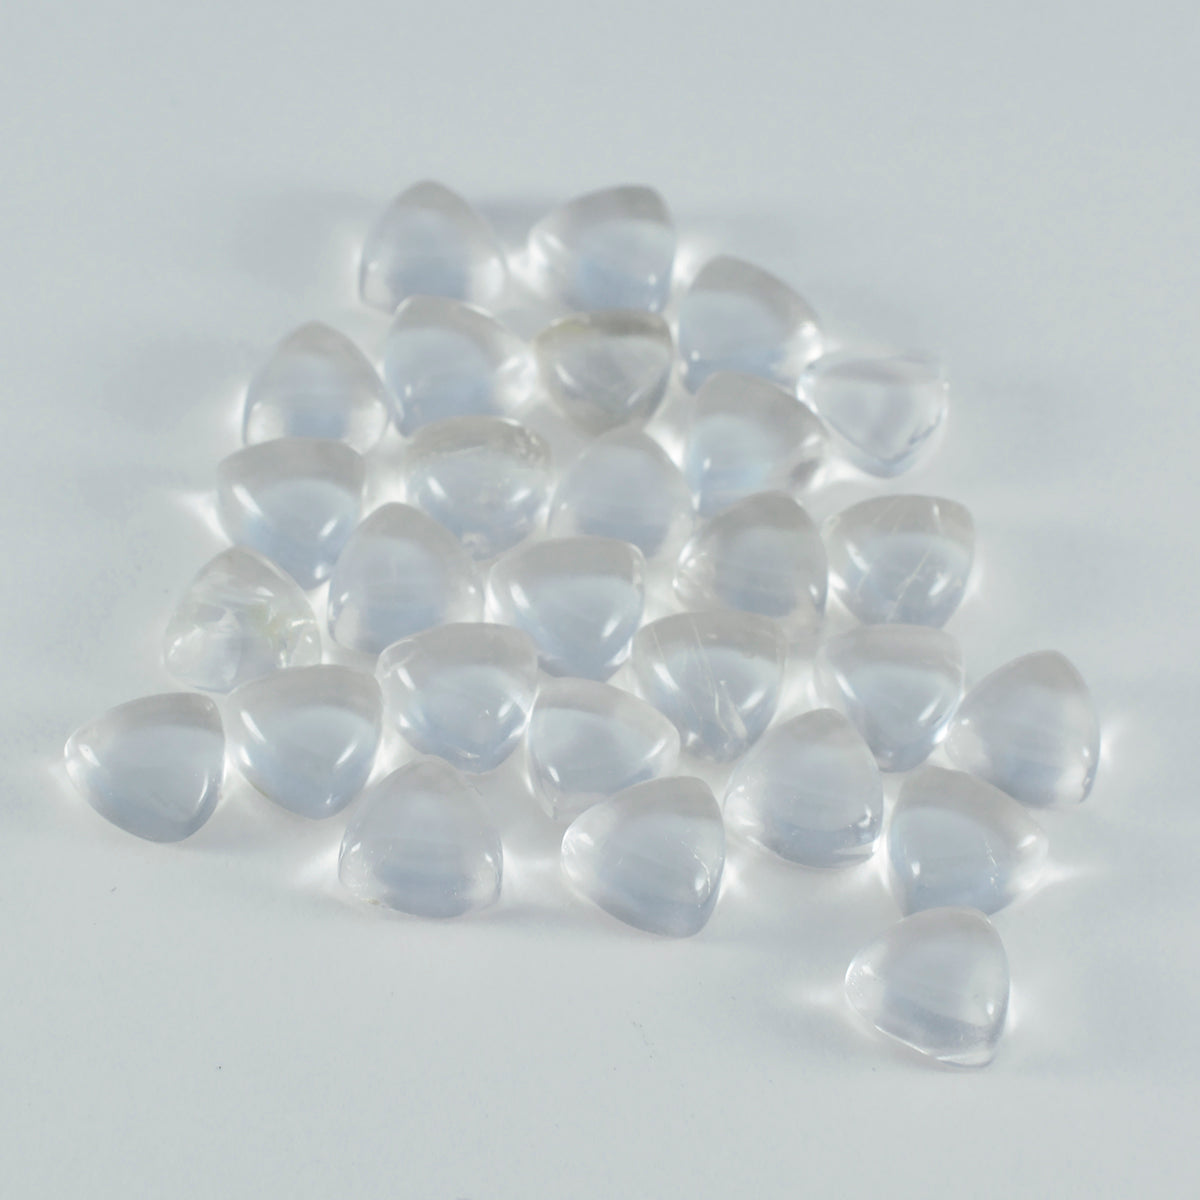 riyogems 1 шт., кабошон из белого кристалла кварца, 8x8 мм, форма триллиона, камень замечательного качества